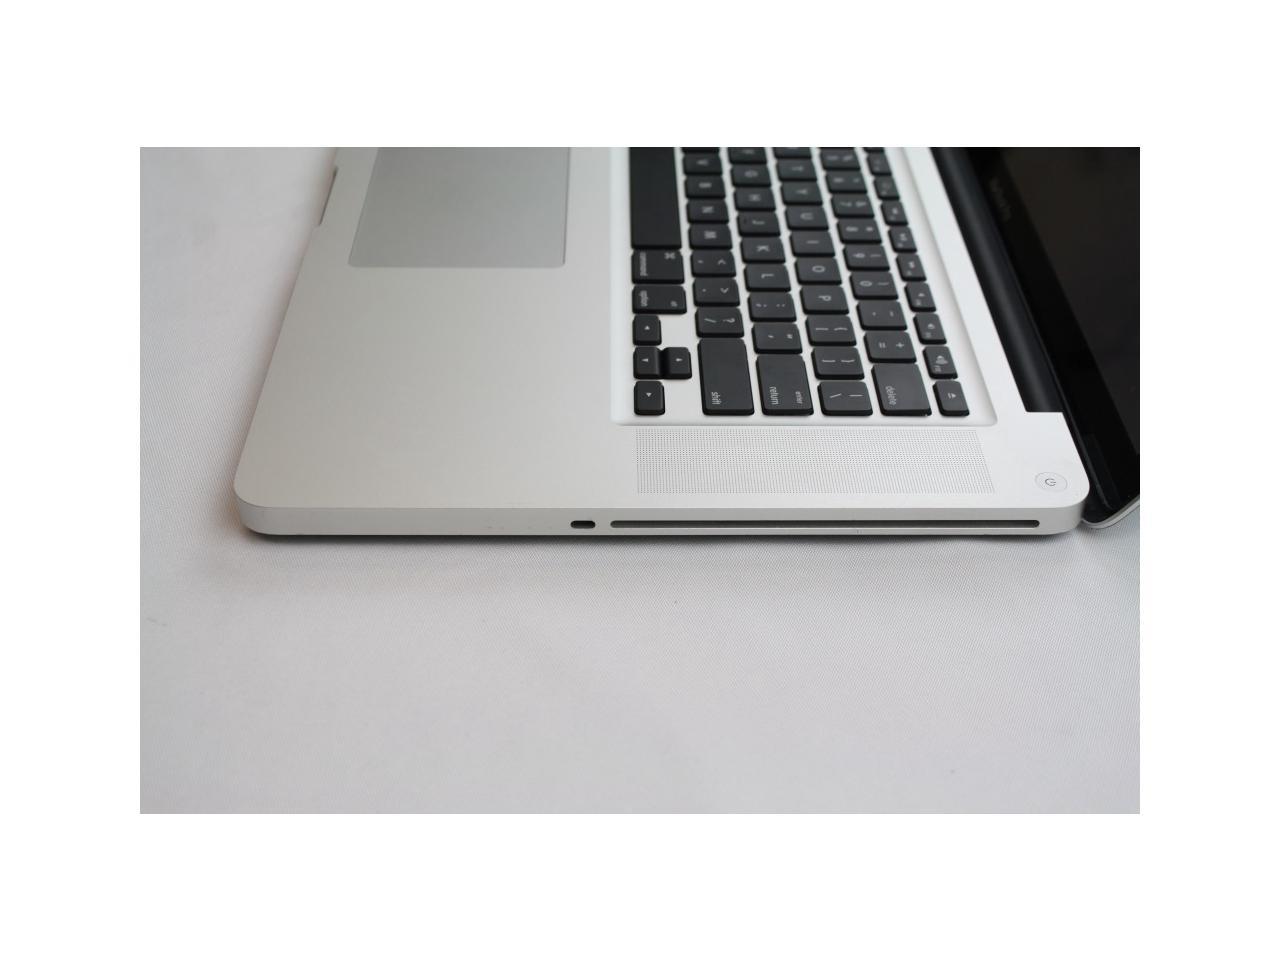 ✻ MacBook Pro A1286